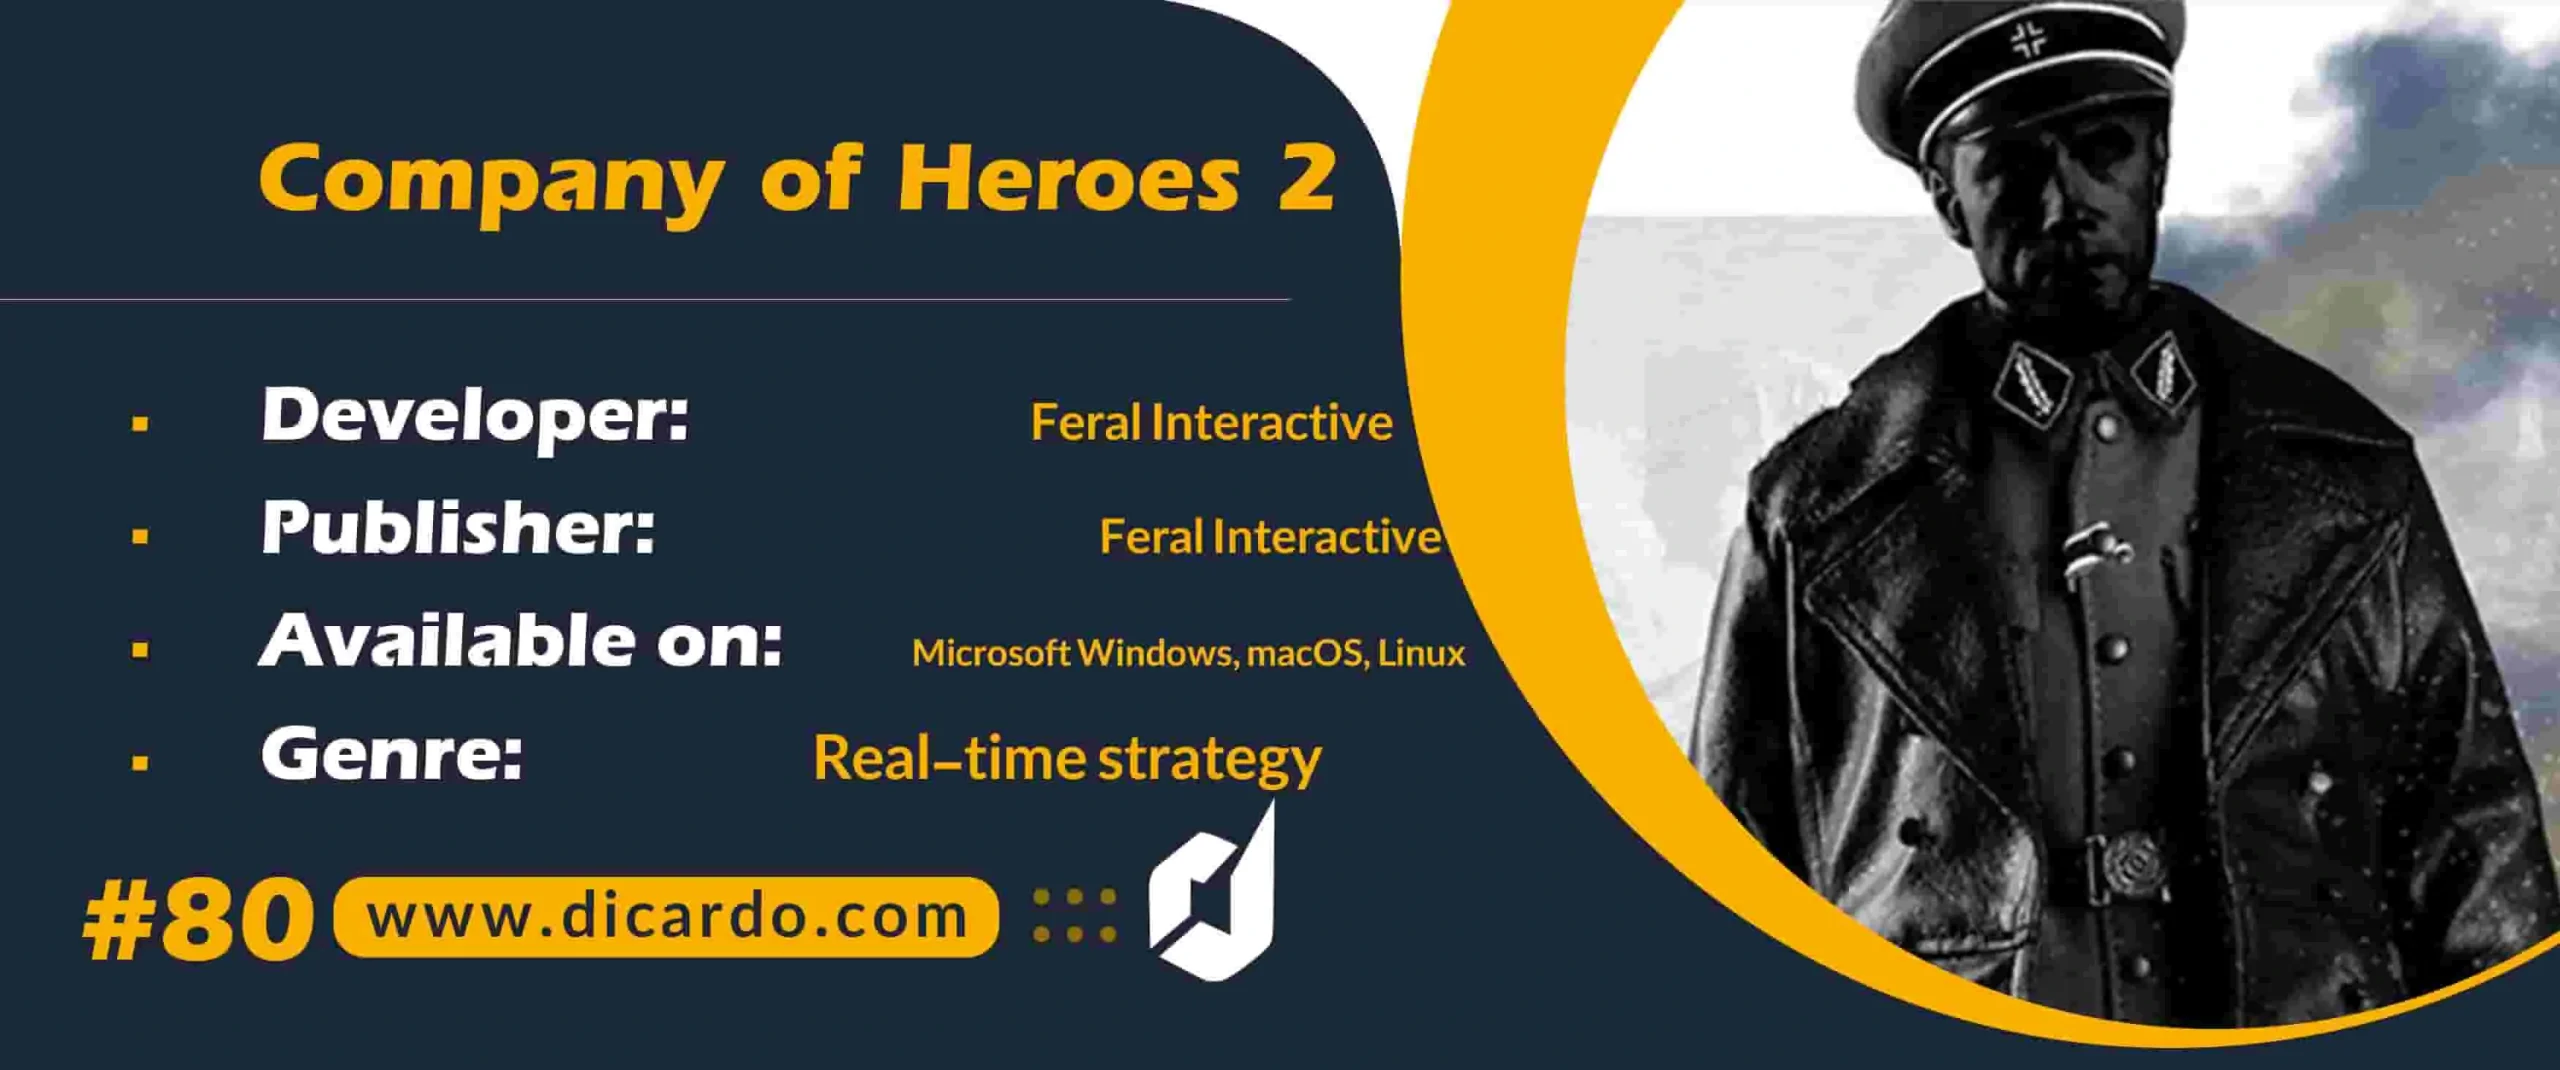 #80 کمپانی آو هیروز 2 Company of Heroes 2 از بهترین بازیهای کامپیوتری با استراتژی زمان واقعی